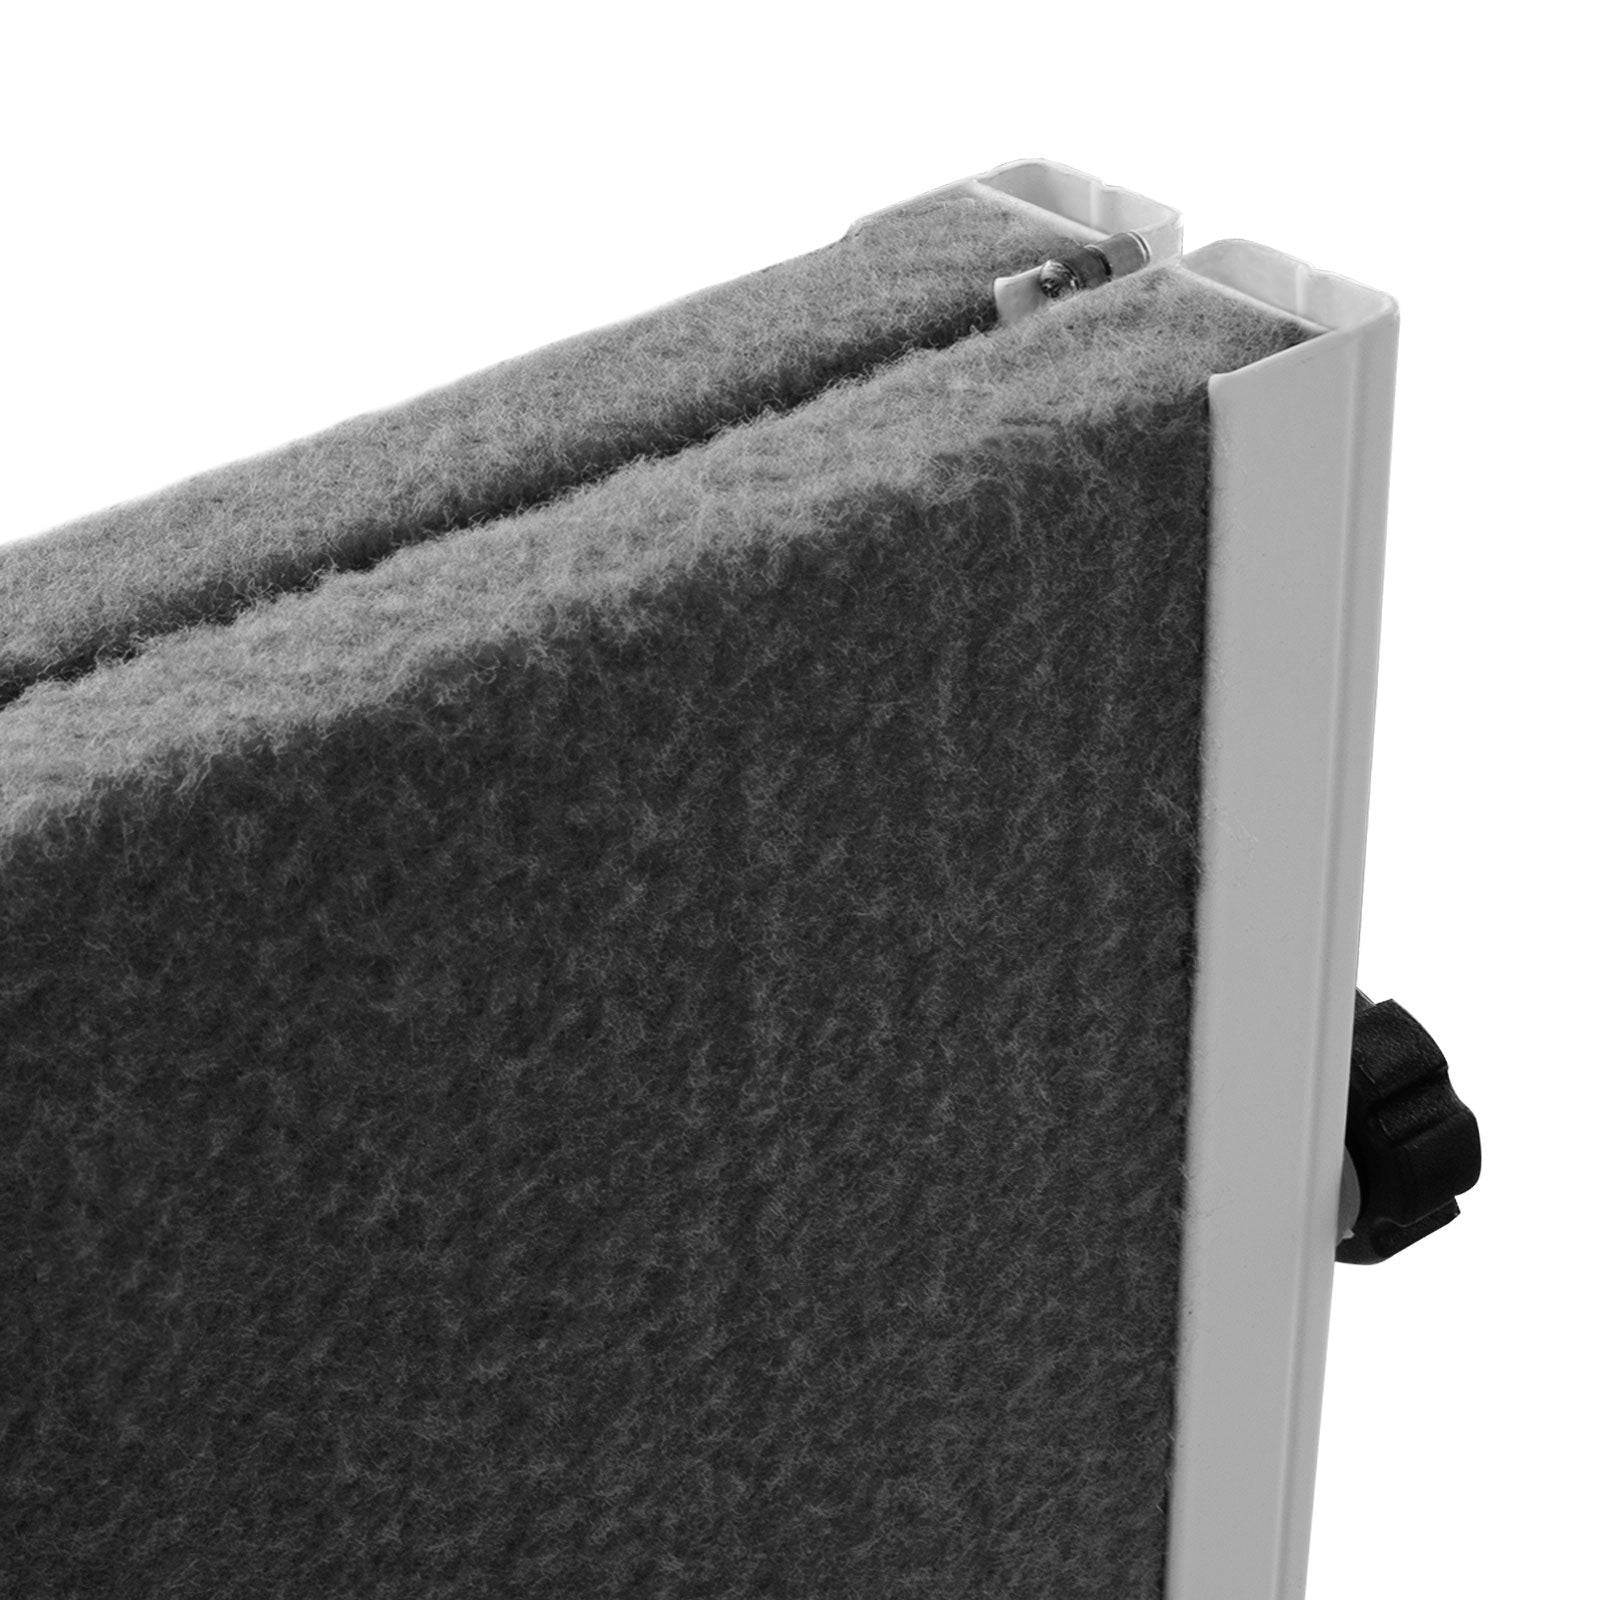 Filz-Moderationstafel Klappbar Mit Rollen 150x120 cm 2 Farben | Grau